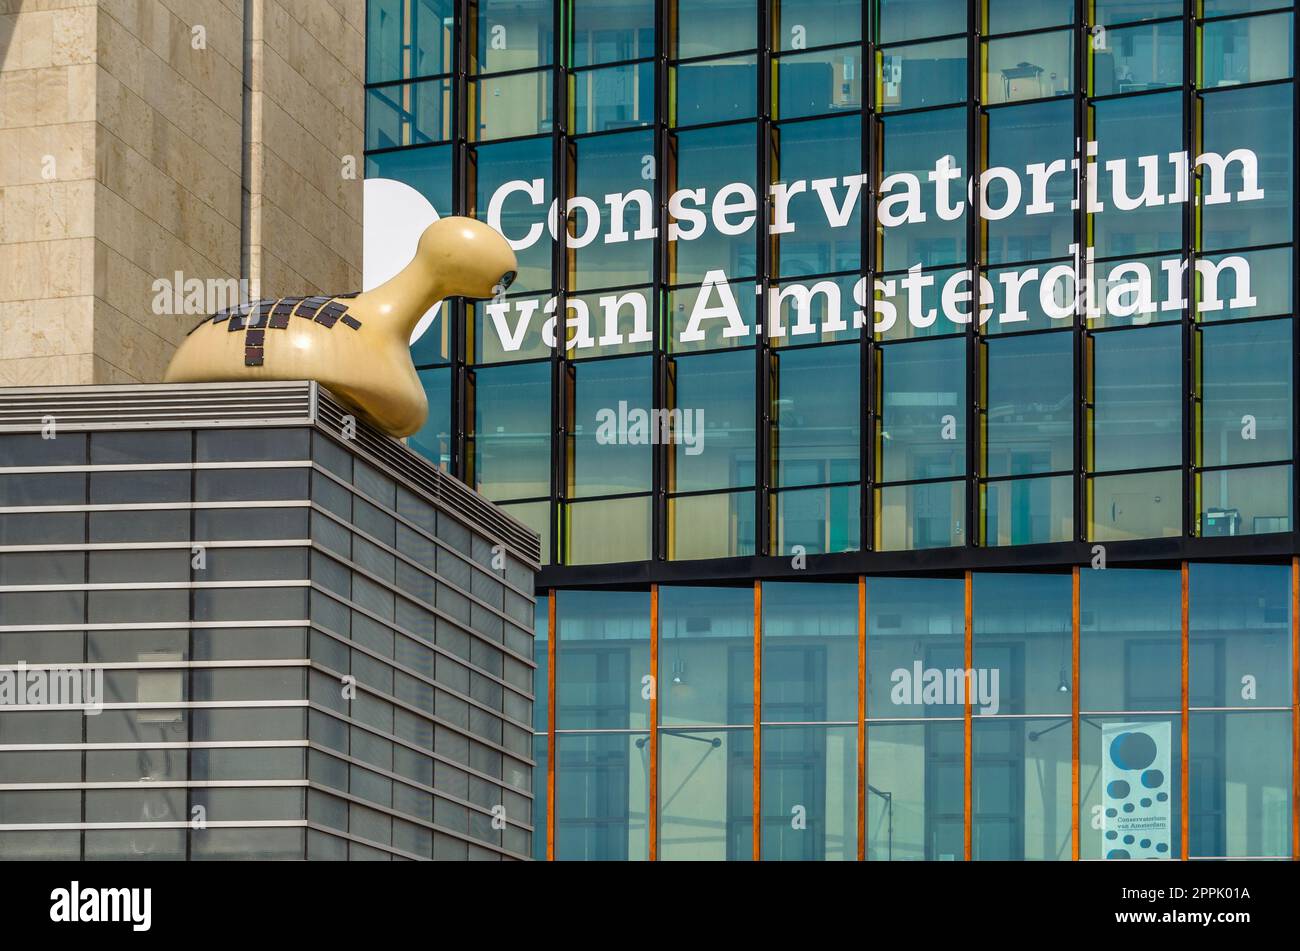 AMSTERDAM, PAYS-BAS - 24 AOÛT 2013 : entrée au Conservatorium van Amsterdam, un conservatoire néerlandais de musique, situé dans un bâtiment moderne à l'Oosterdokseiland, près de la gare centrale d'Amsterdam Banque D'Images